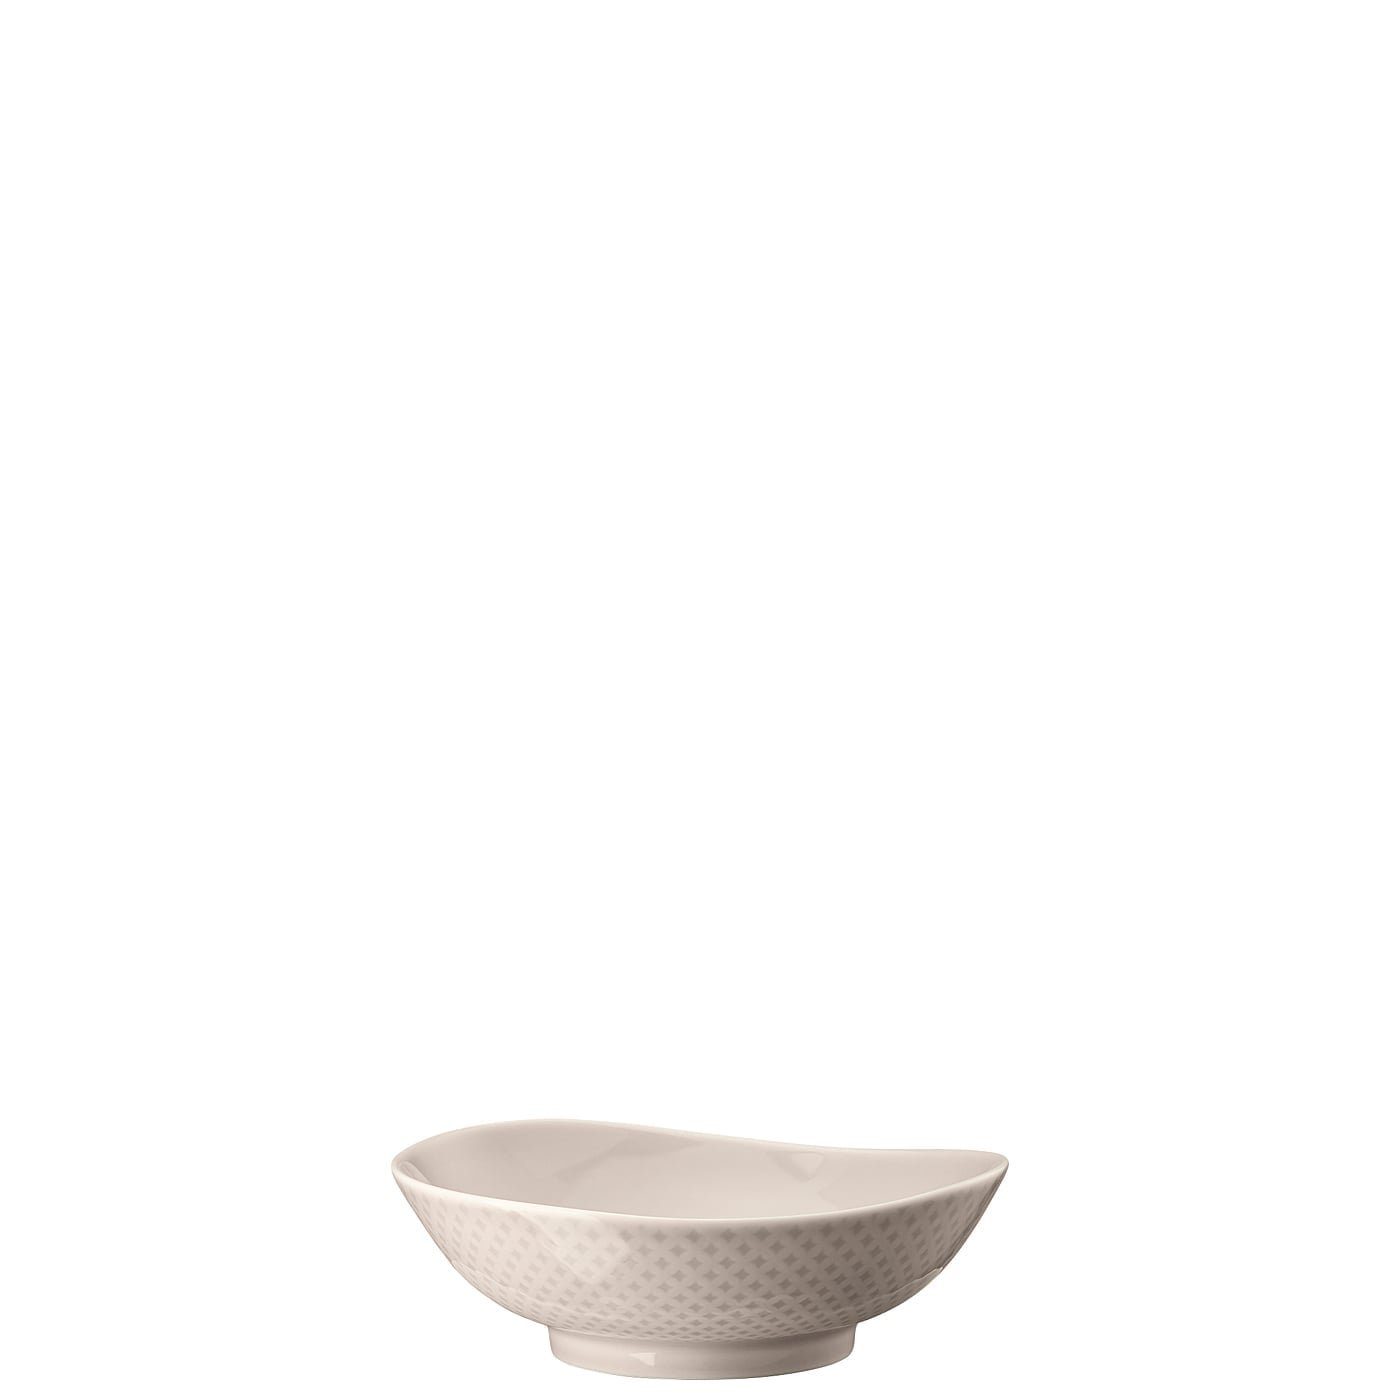 Rosenthal Schale Porzellan, Bowl Junto mikrowellengeeignet cm, Shell 15 Soft